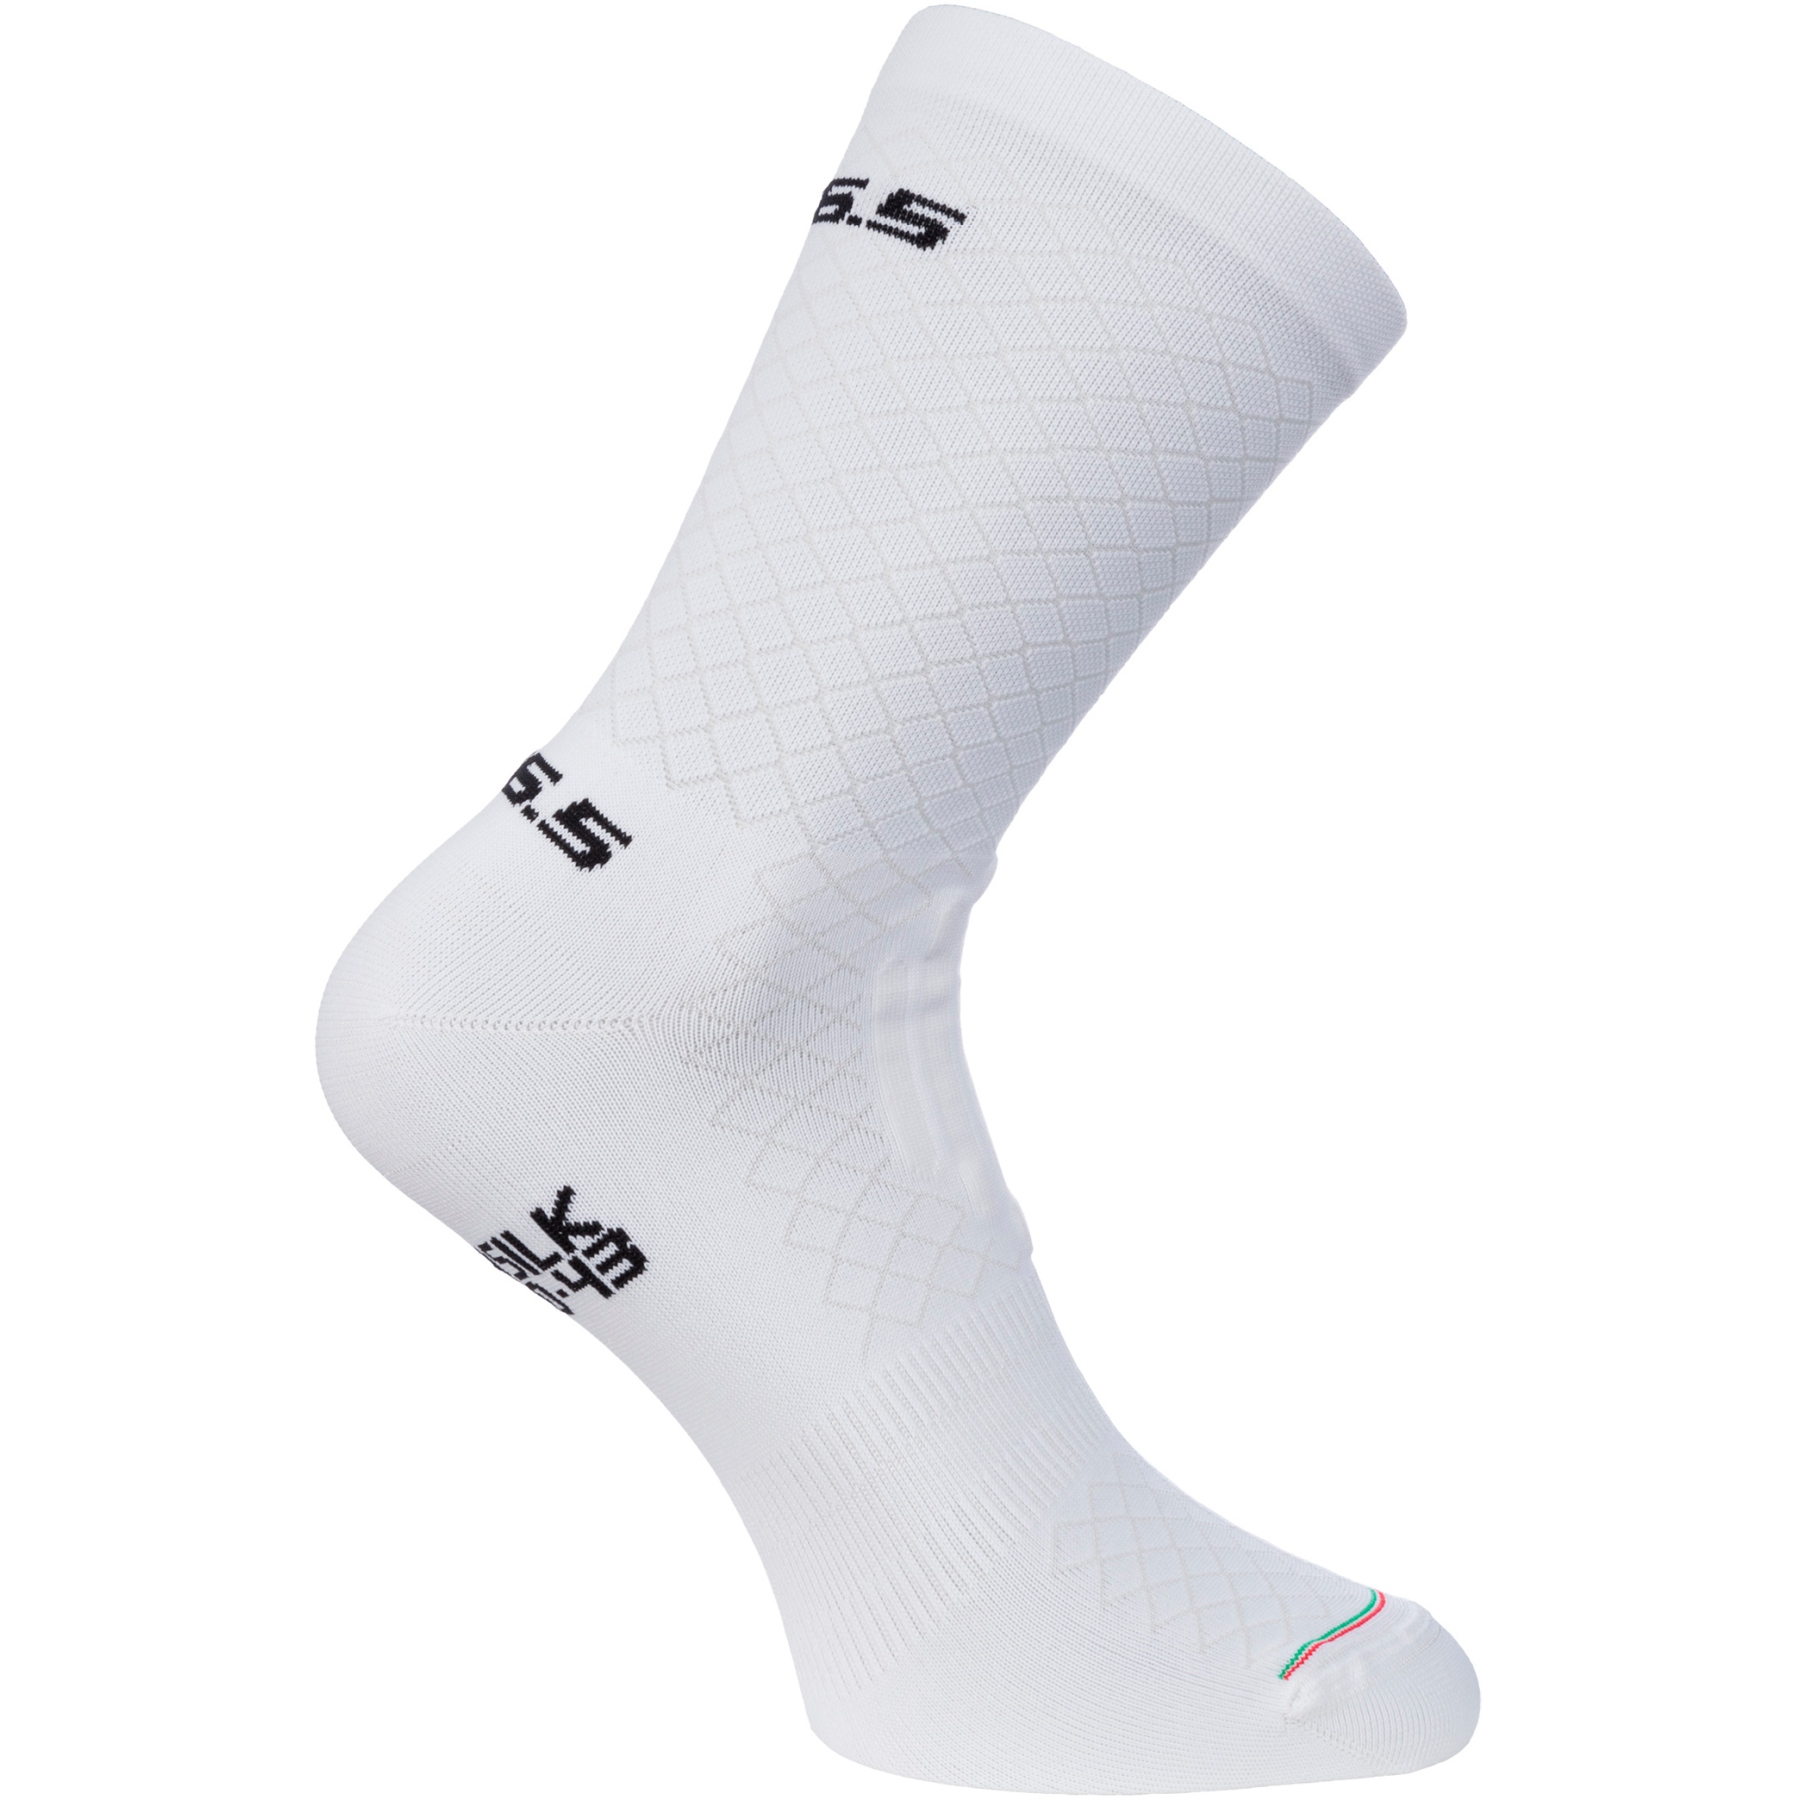 Produktbild von Q36.5 Leggera Socken - white